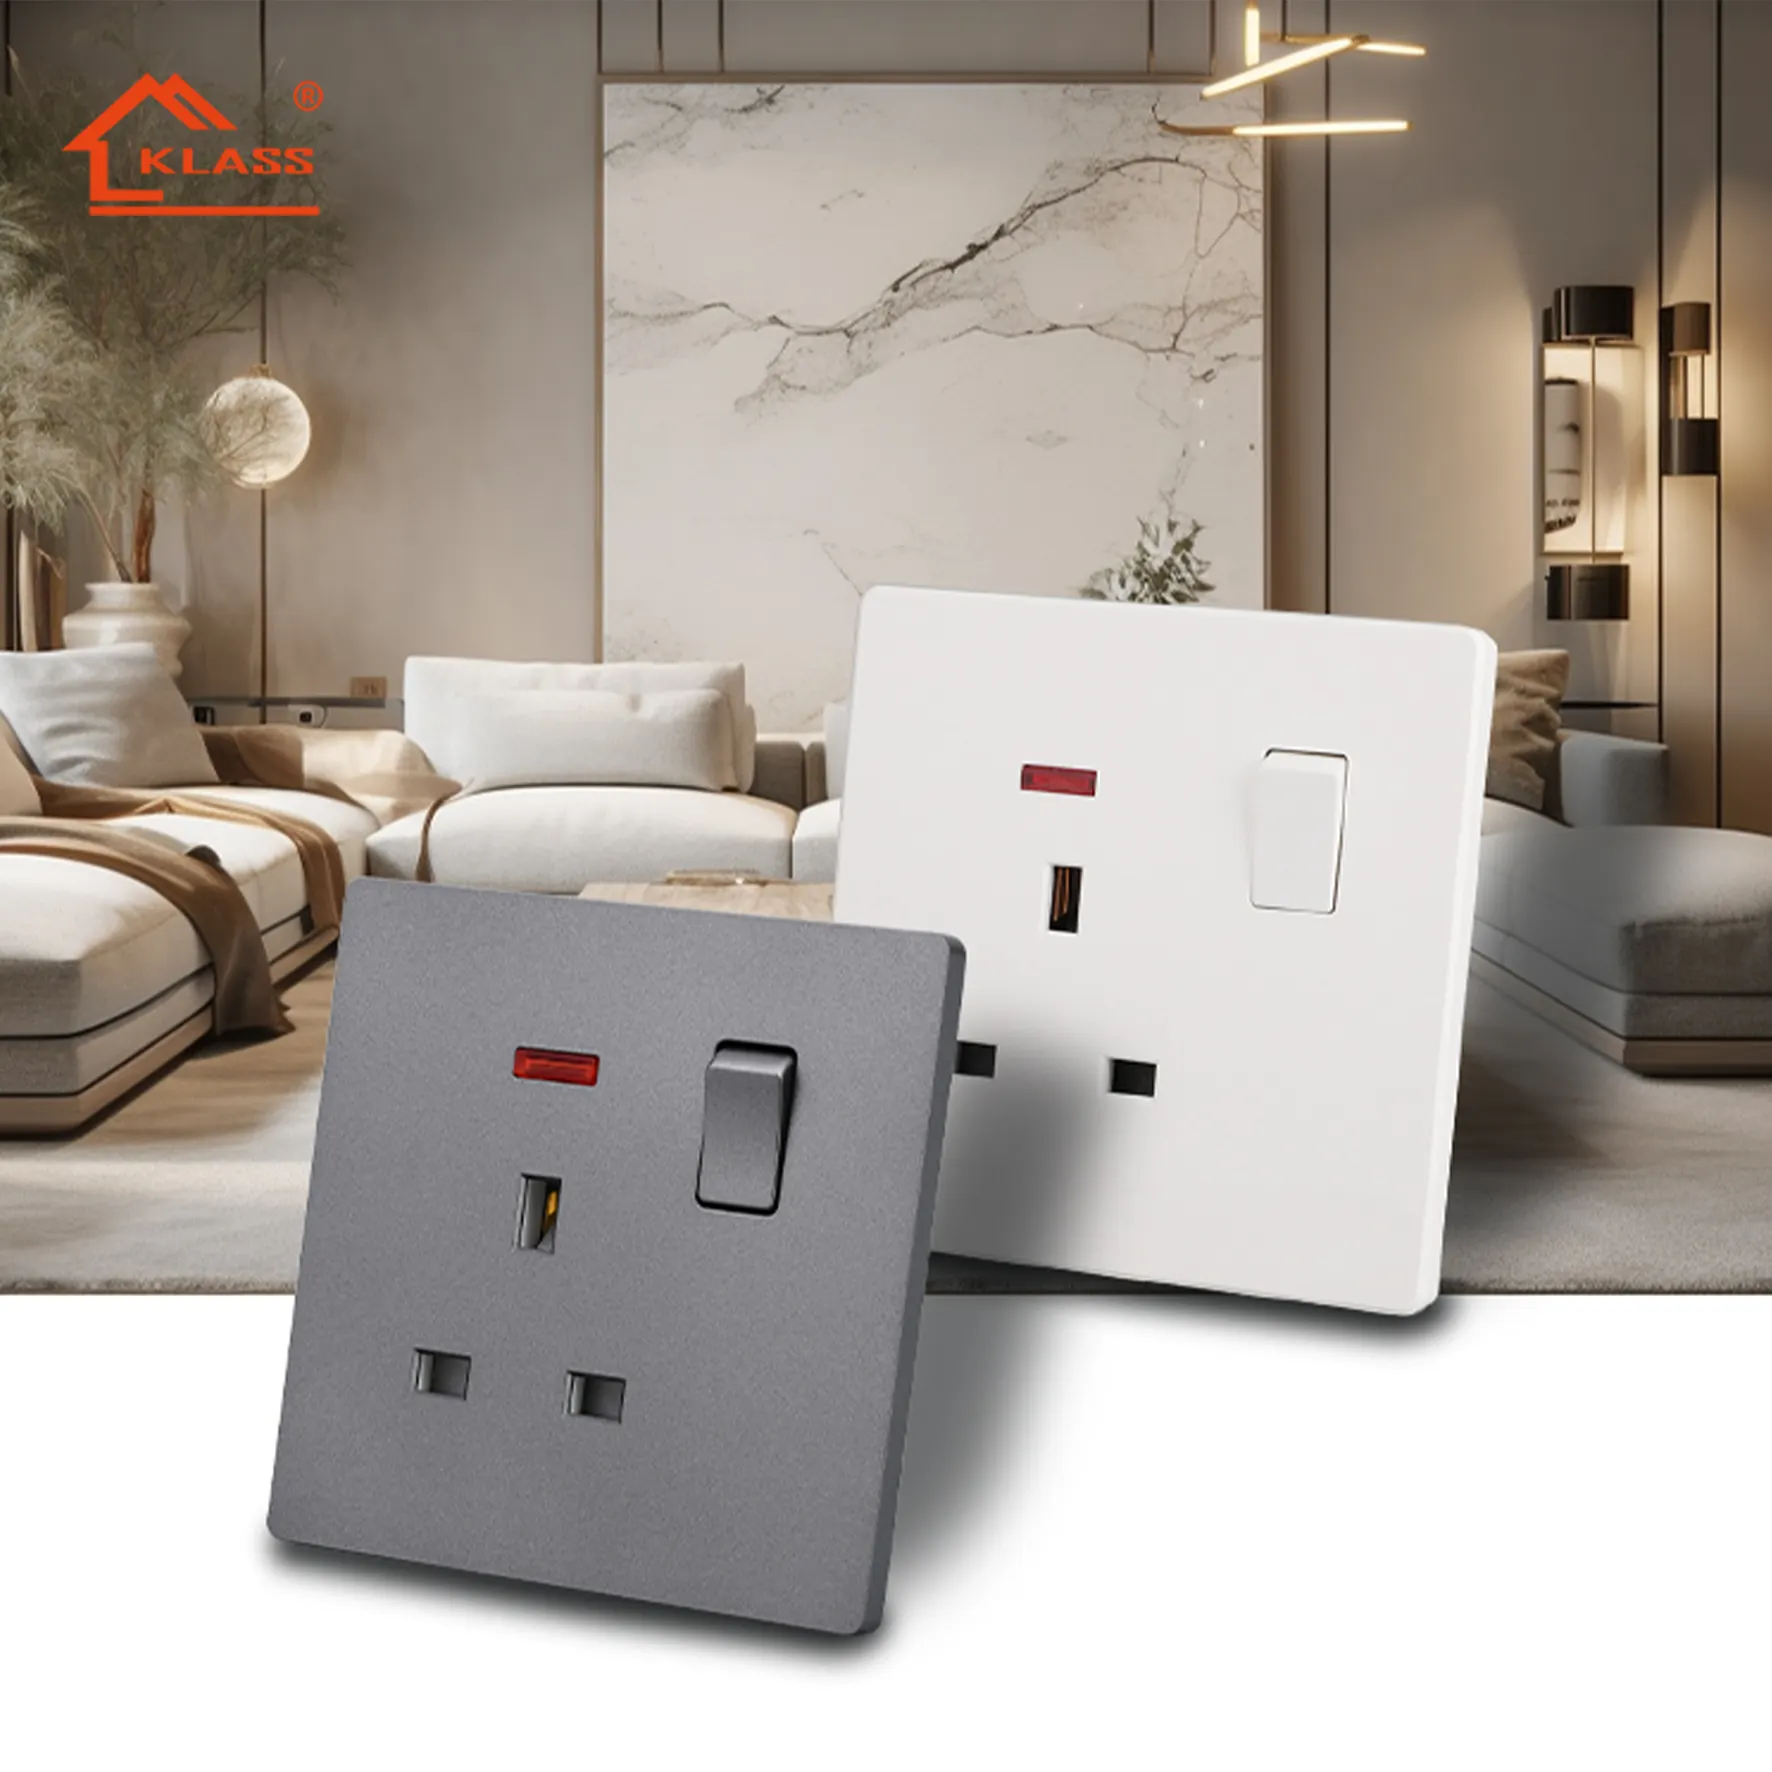 KLASS-Interruptores eléctricos de pared para el hogar, enchufes e interruptores de enchufe para el Reino Unido, BS SQM